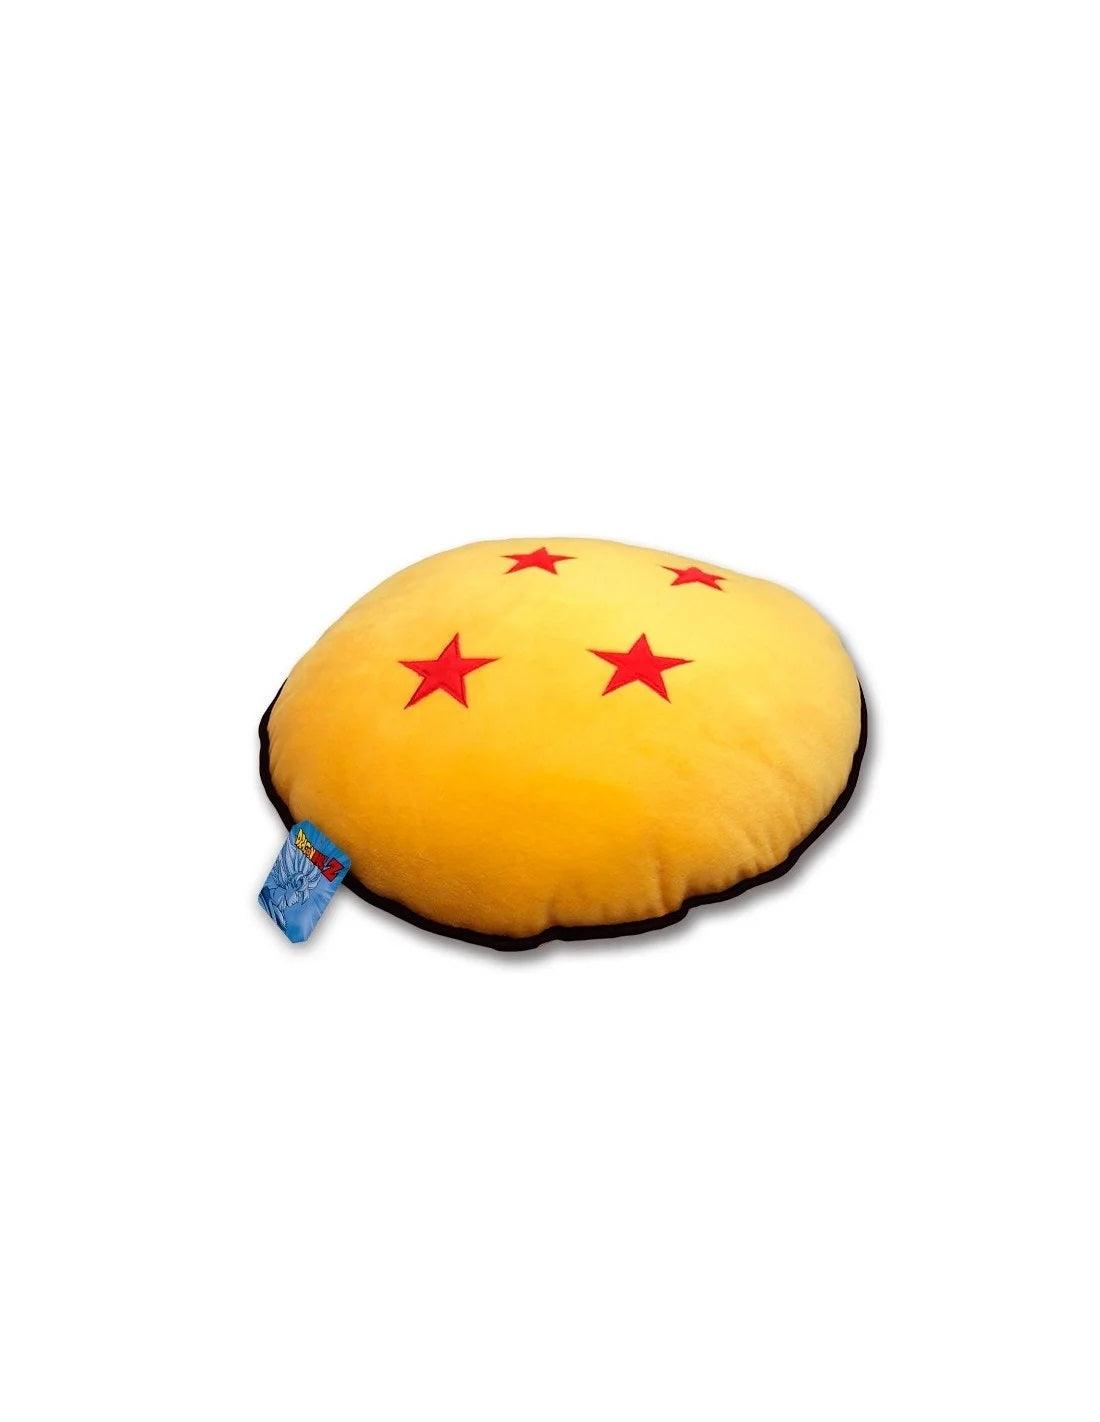 Cuscino rotondo sfera del drago 4 stelle 35 cm - DRAGON BALL - Magic Dreams Store